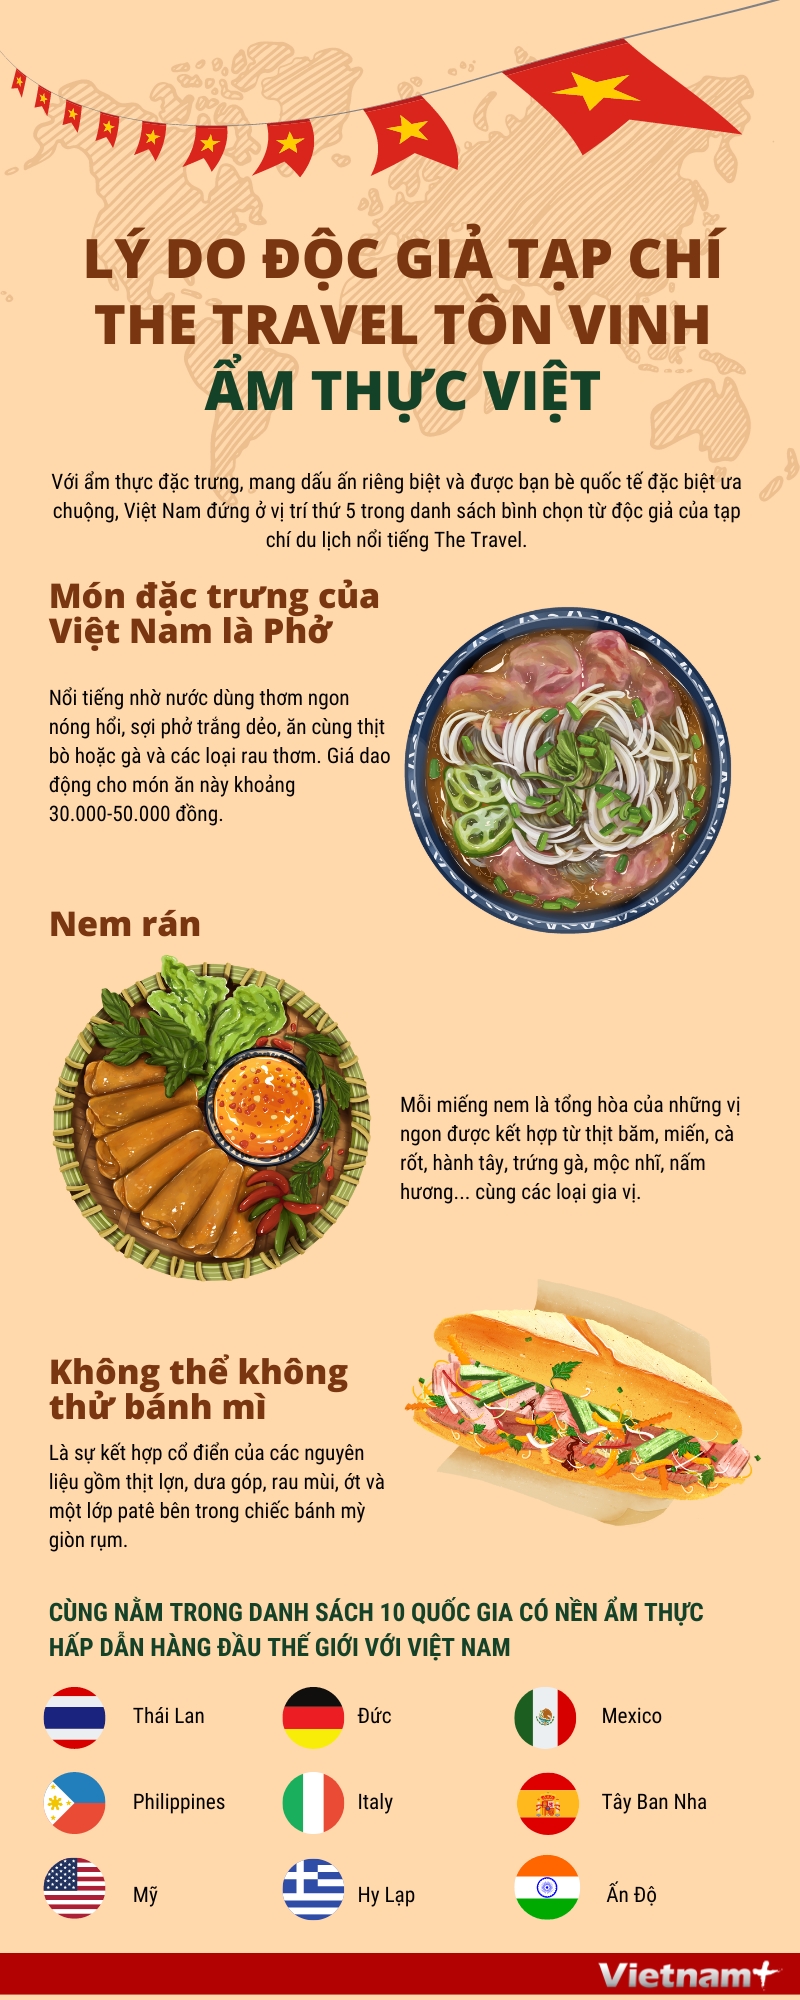 Lý do độc giả tạp chí The Travel tôn vinh ẩm thực Việt